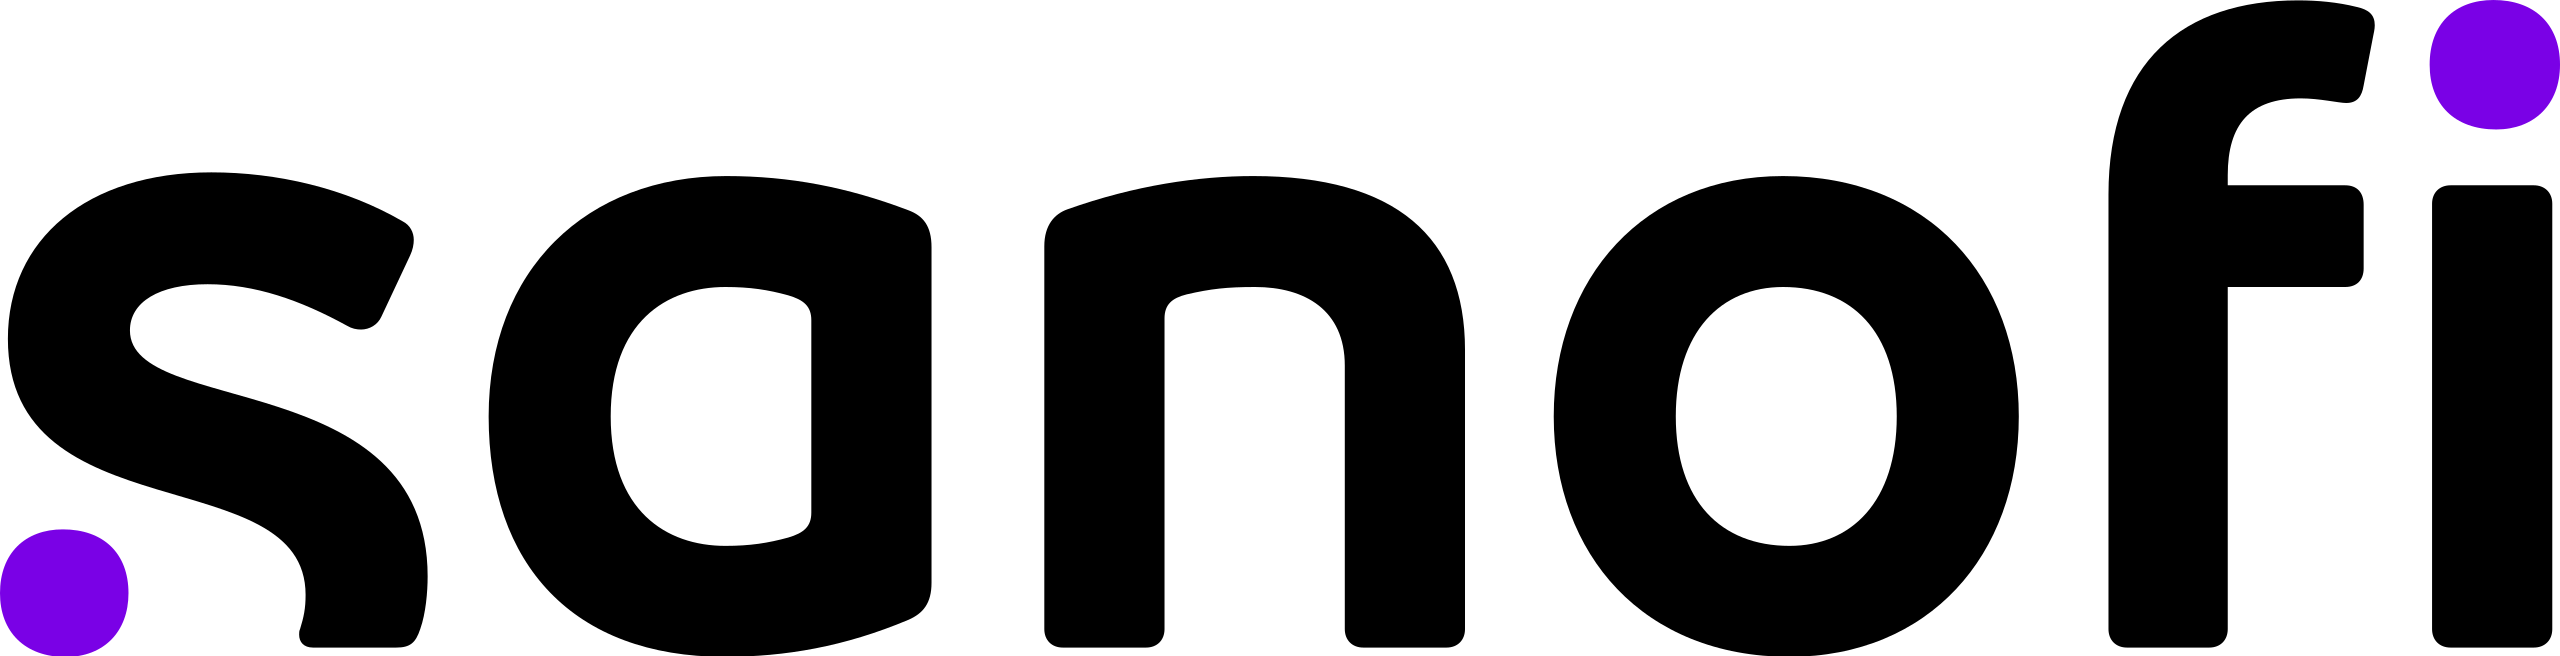 Logo de Sanofi.